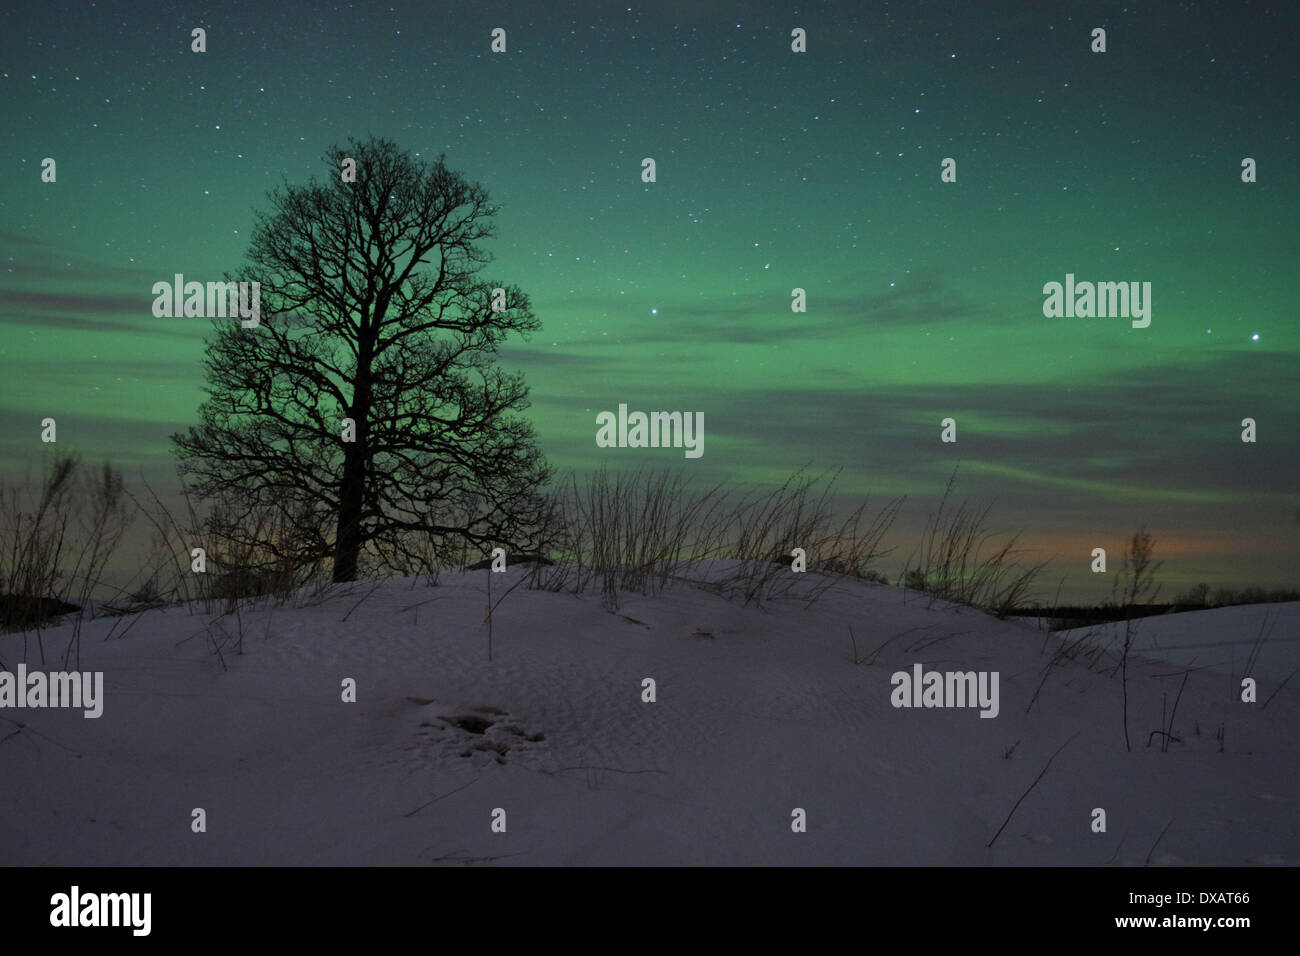 Baum mit Nordlichter (Aurora Borealis) am Himmel. Stockfoto